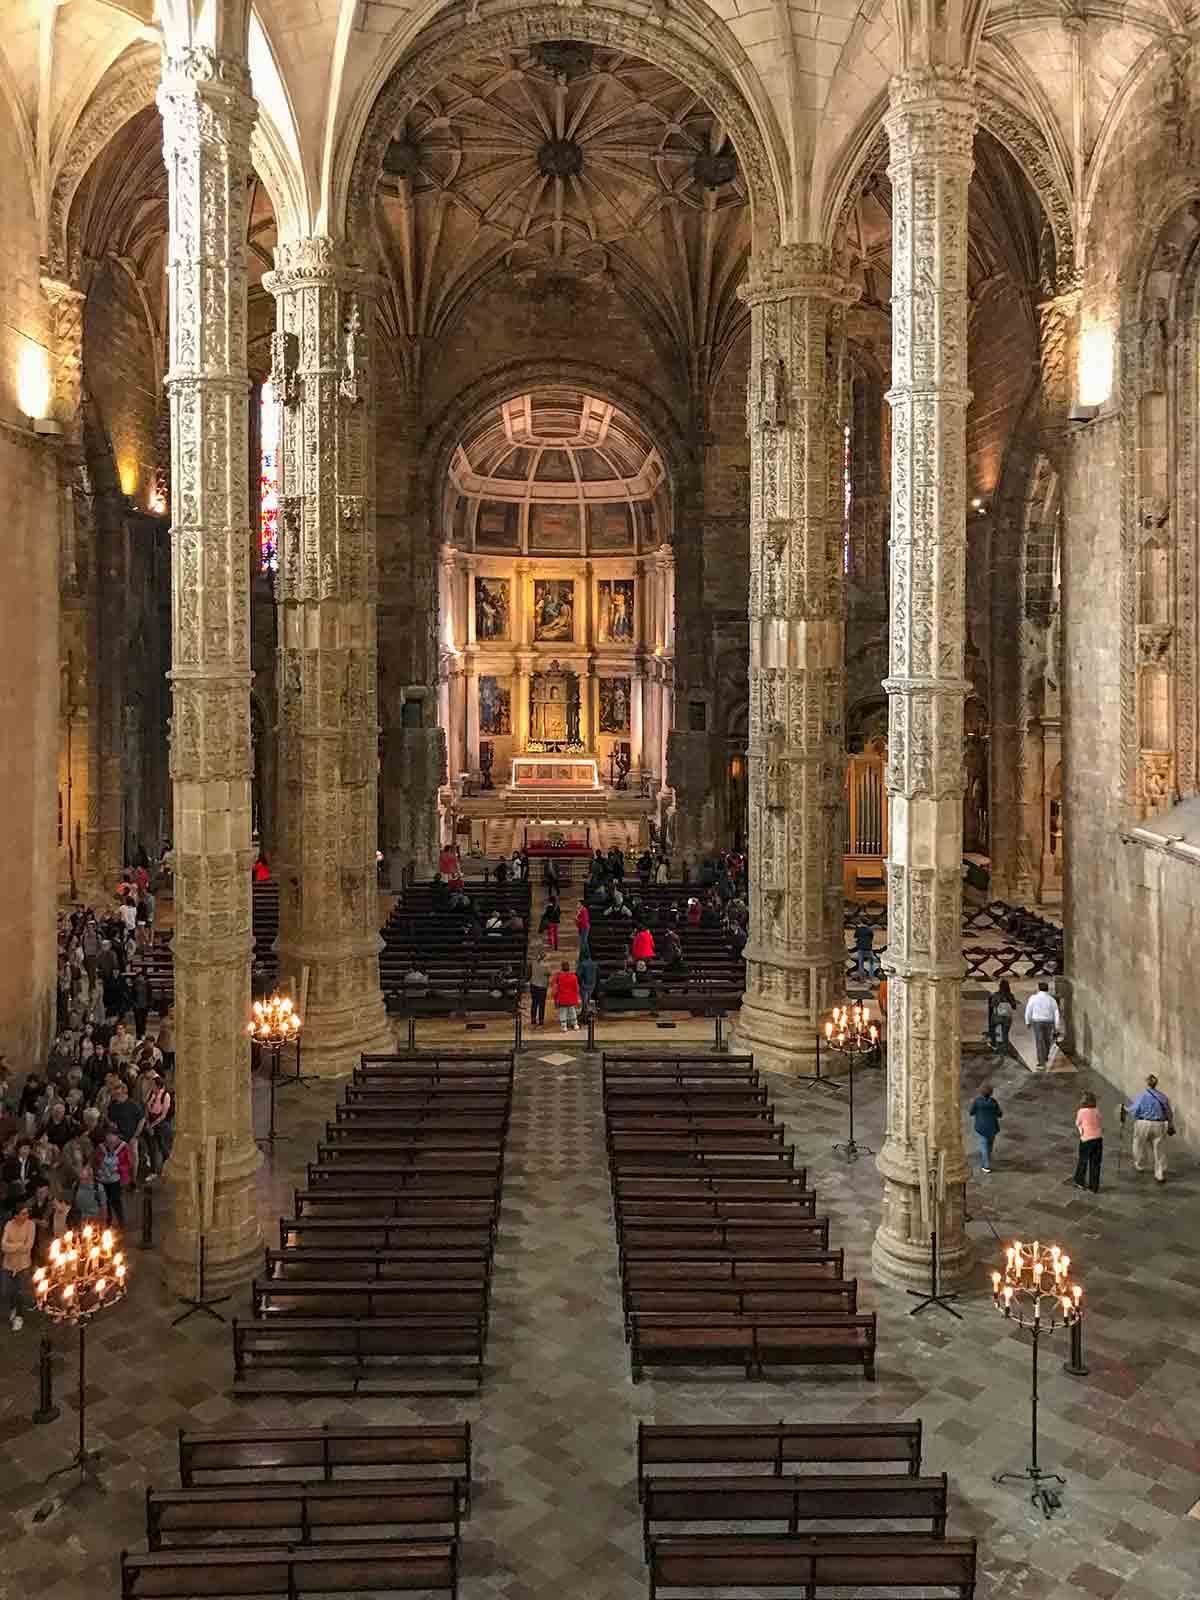 The interior of Mosteiro dos Jerónimos